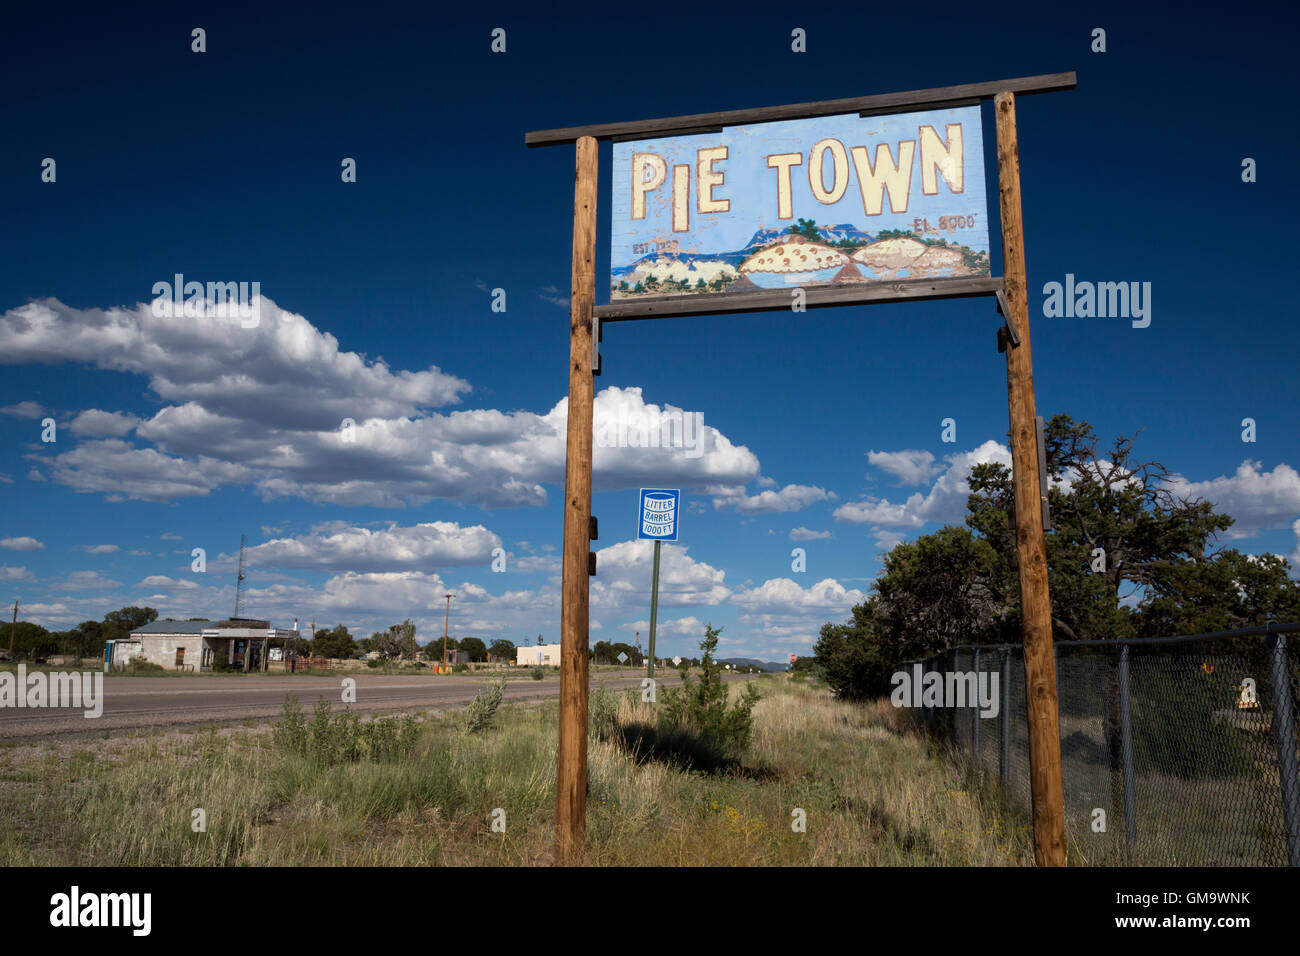 Città di torta, New Mexico - una piccola cittadina famosa per le sue torte. Foto Stock